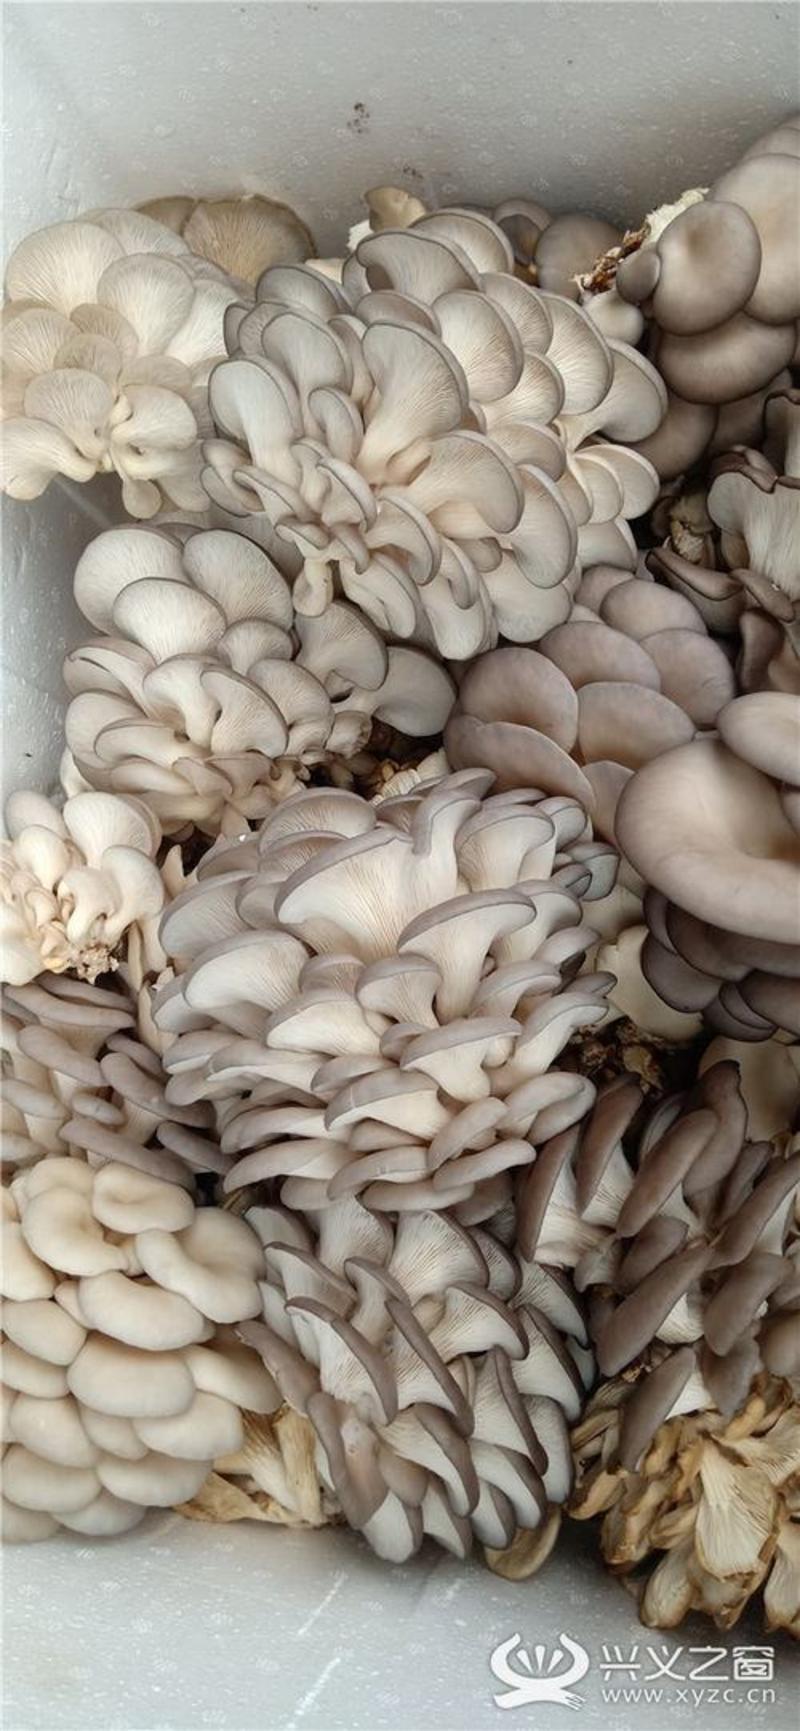 优质平菇肤白貌美大长腿基地直供全国可达产量稳定